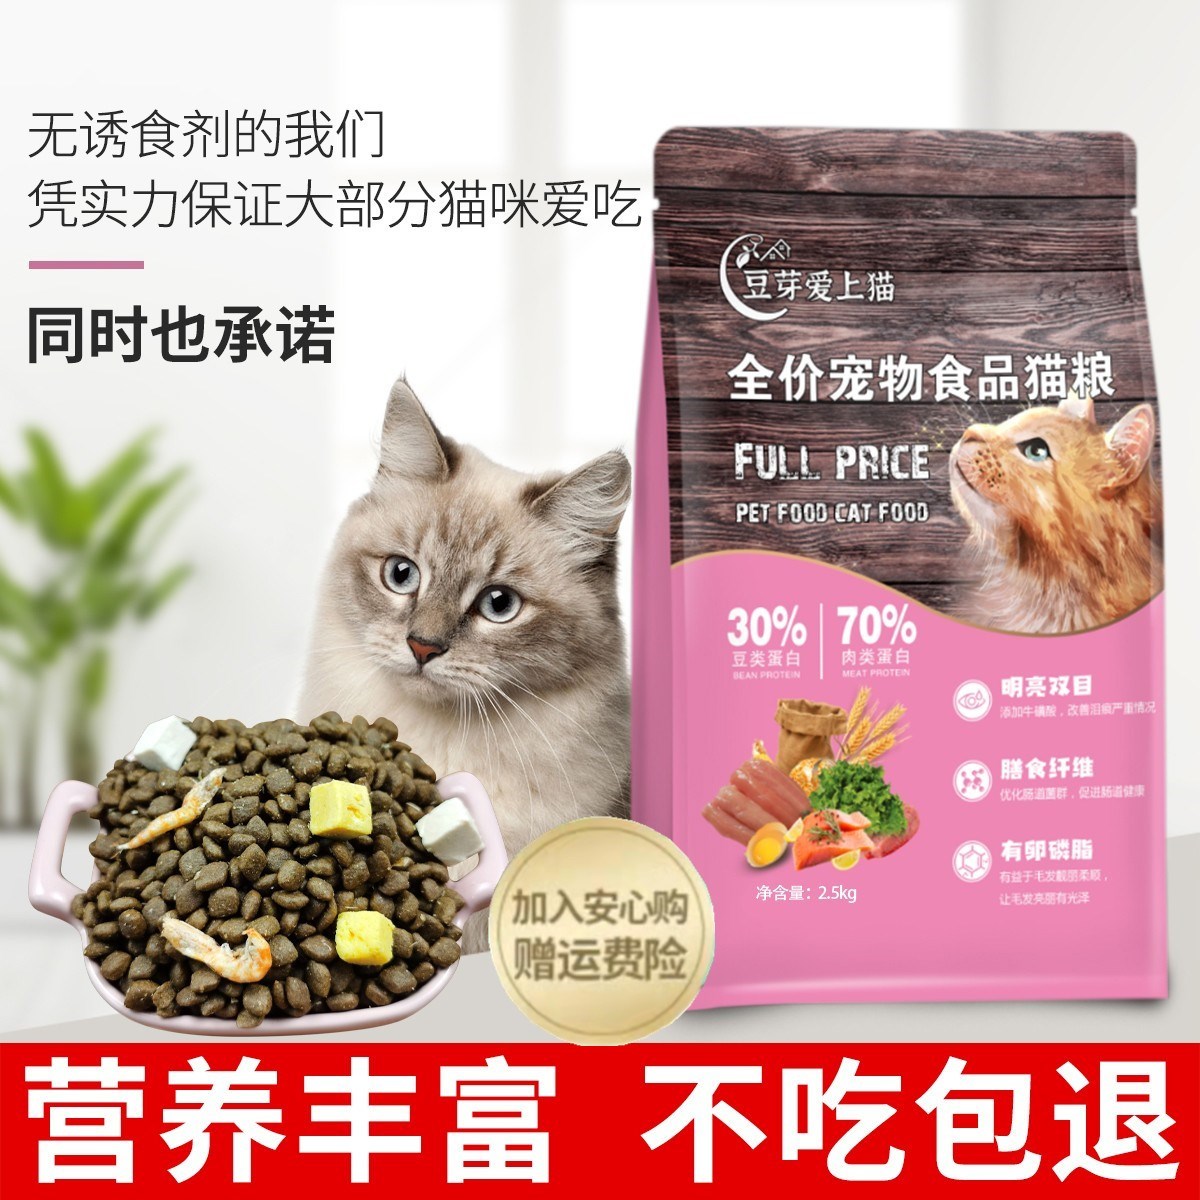 邢台宠诺宠物用品有限公司的小店豆芽爱上猫猫粮发腮1斤5斤10斤高